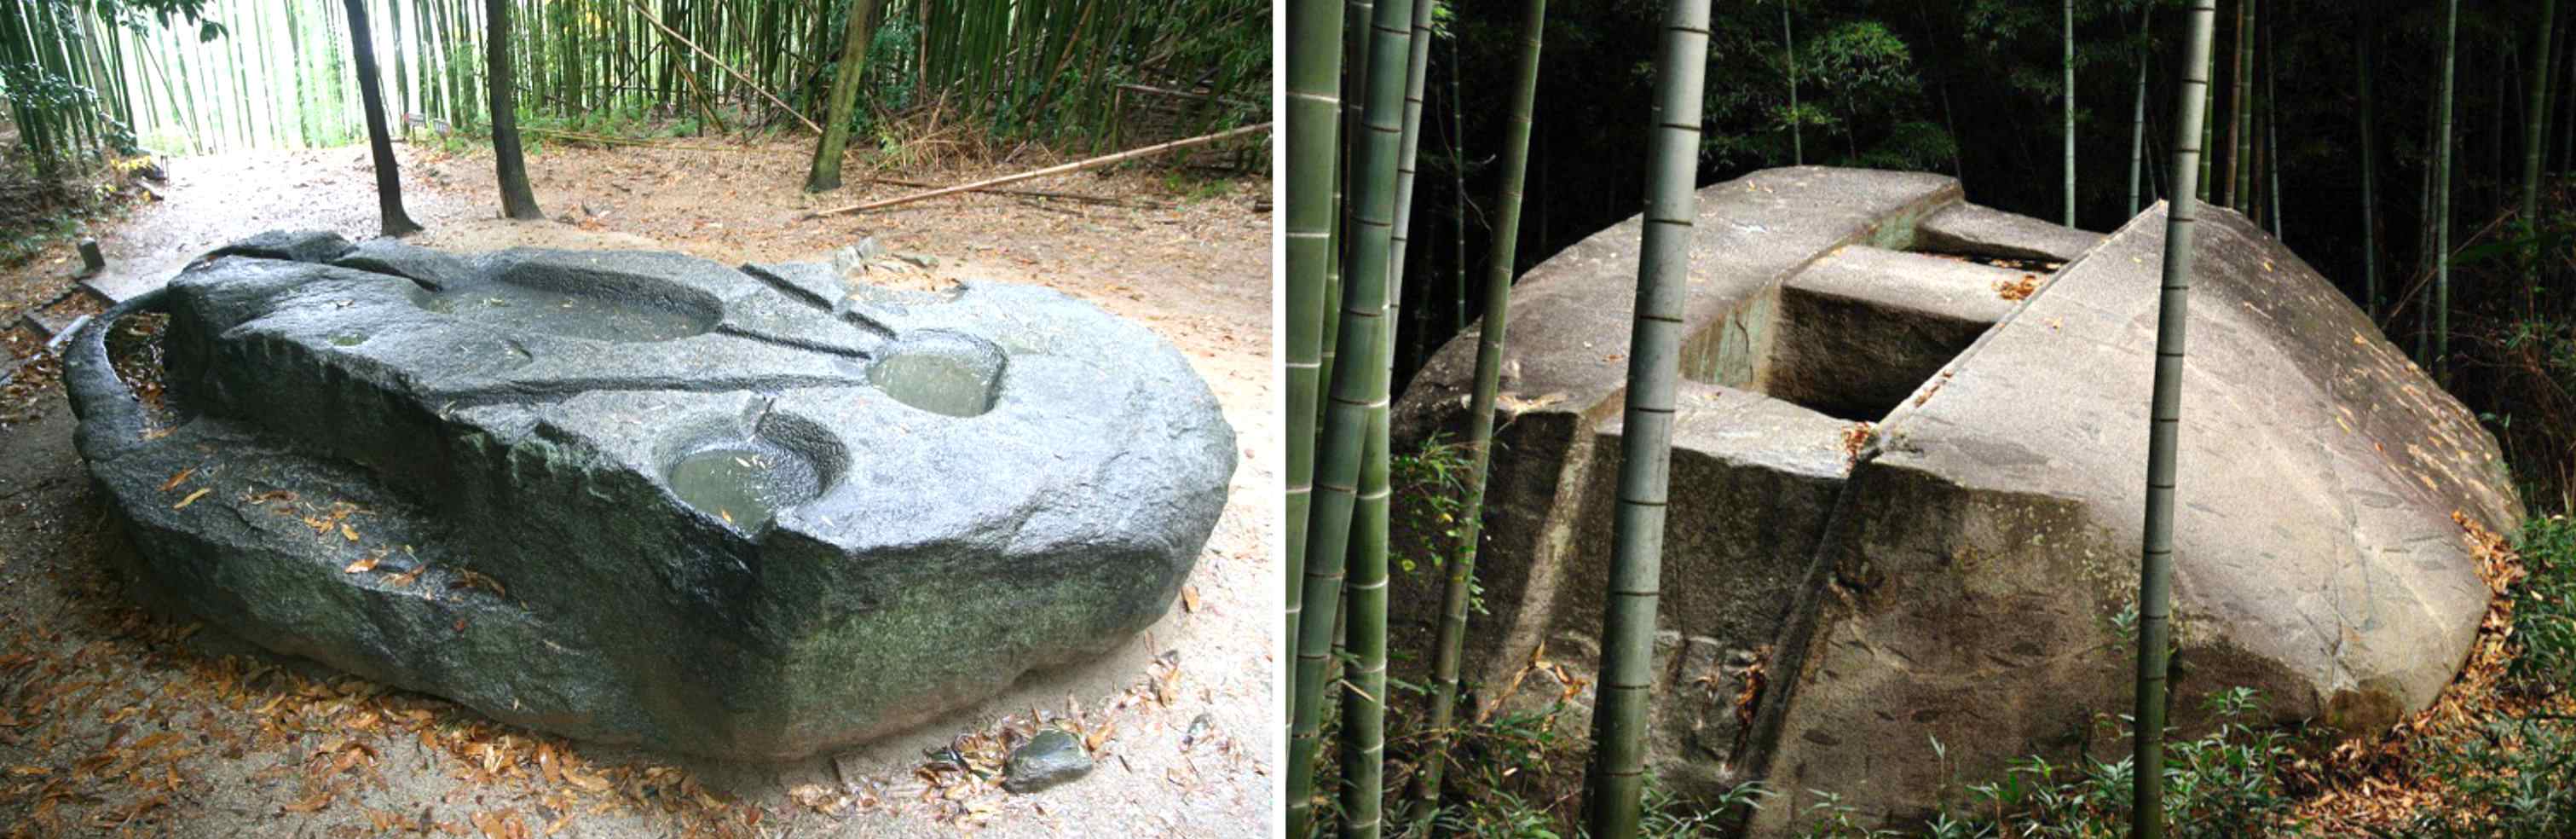 Mekanizmat e lashtë: A e ndërtuan gjigantët këtë megalit japonez që peshon qindra tonë? 3